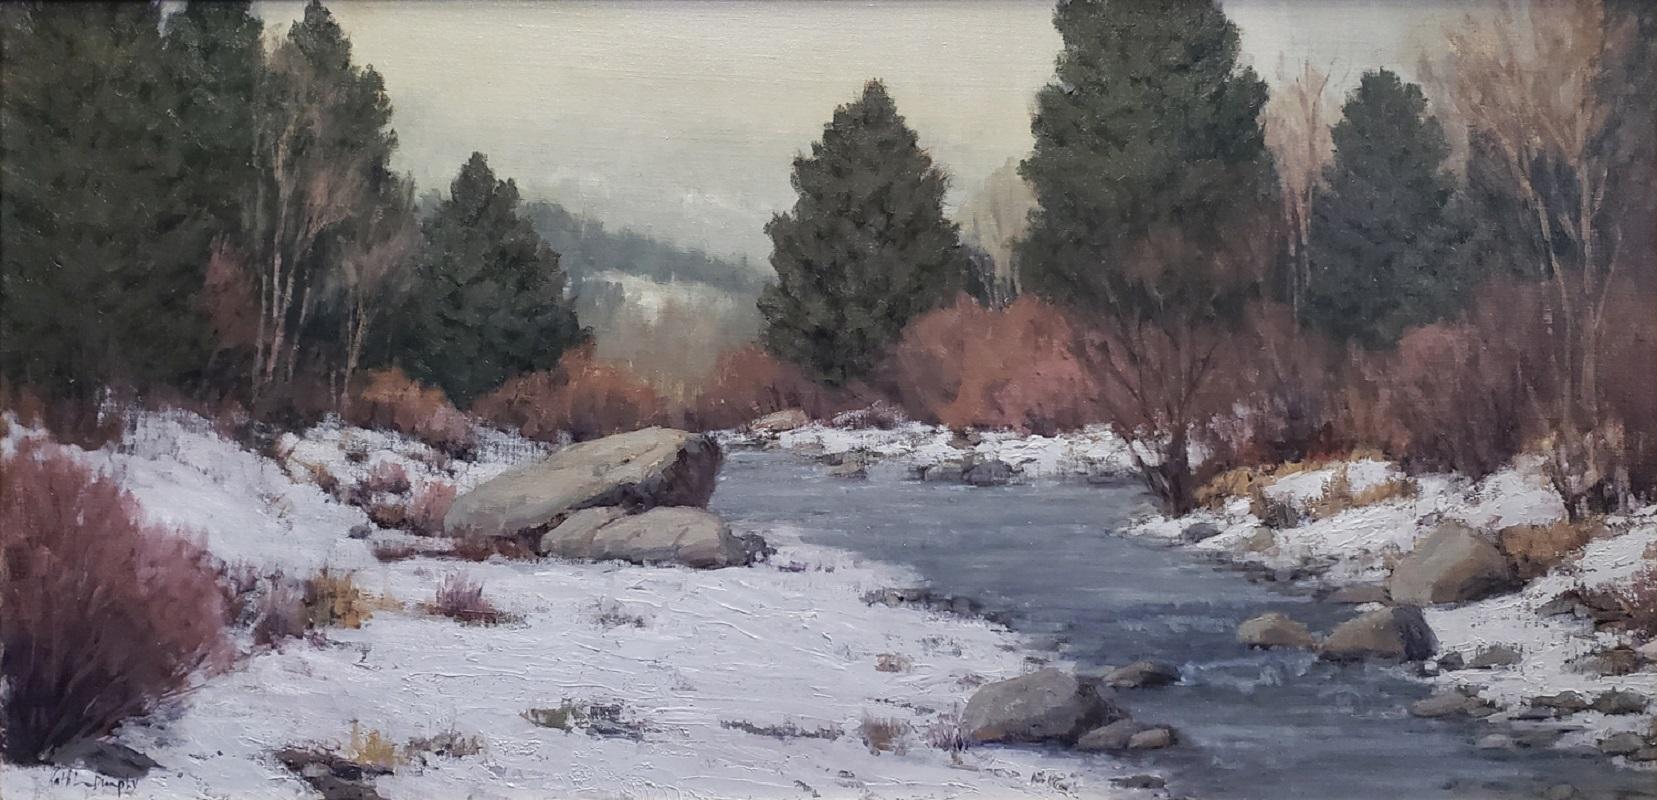 Winter beginnt; Truckee River – Painting von Kathleen Dunphy